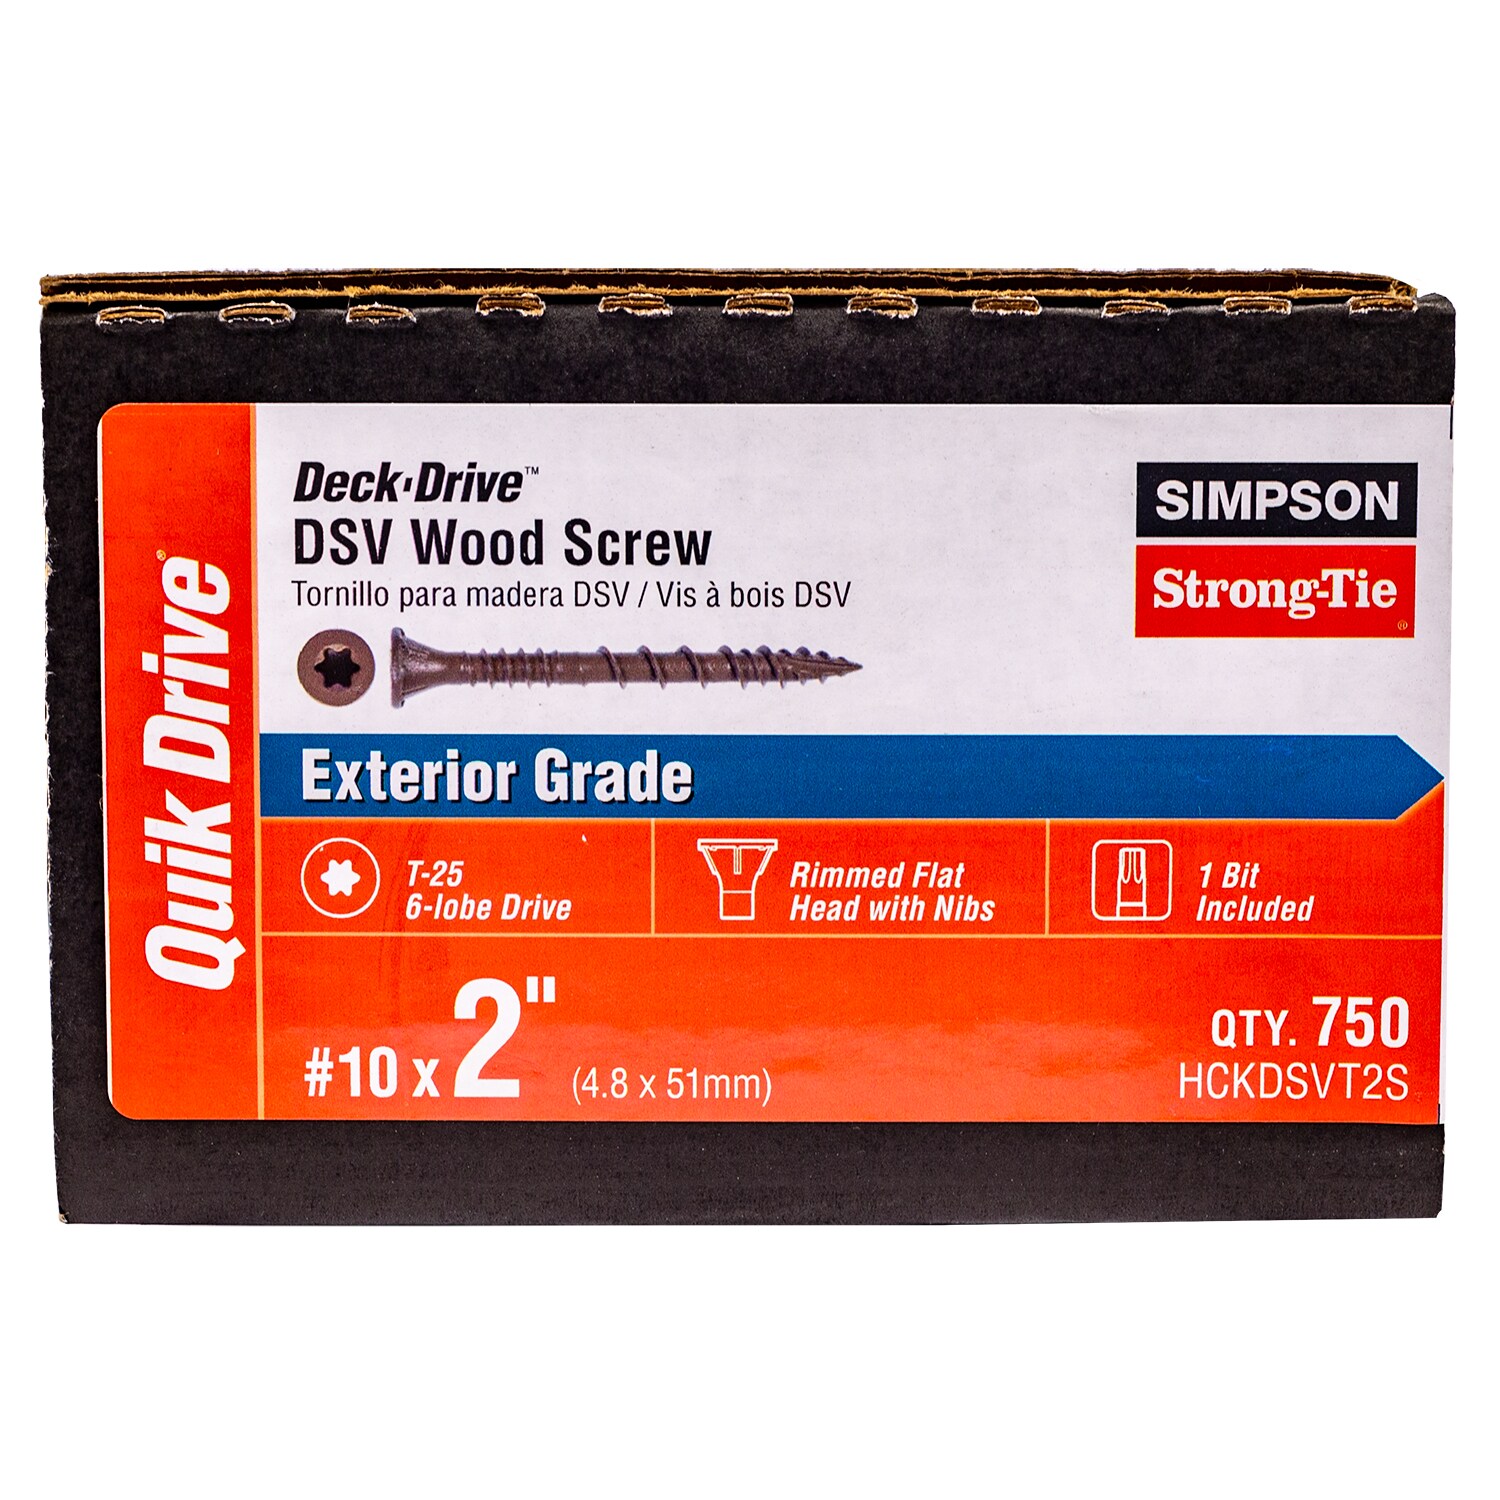 10 x 2 Simpson Deck-Drive DSV Wood Quik Guard Coating Screw T25 6-Lobe Box Red 1 lb - 113 